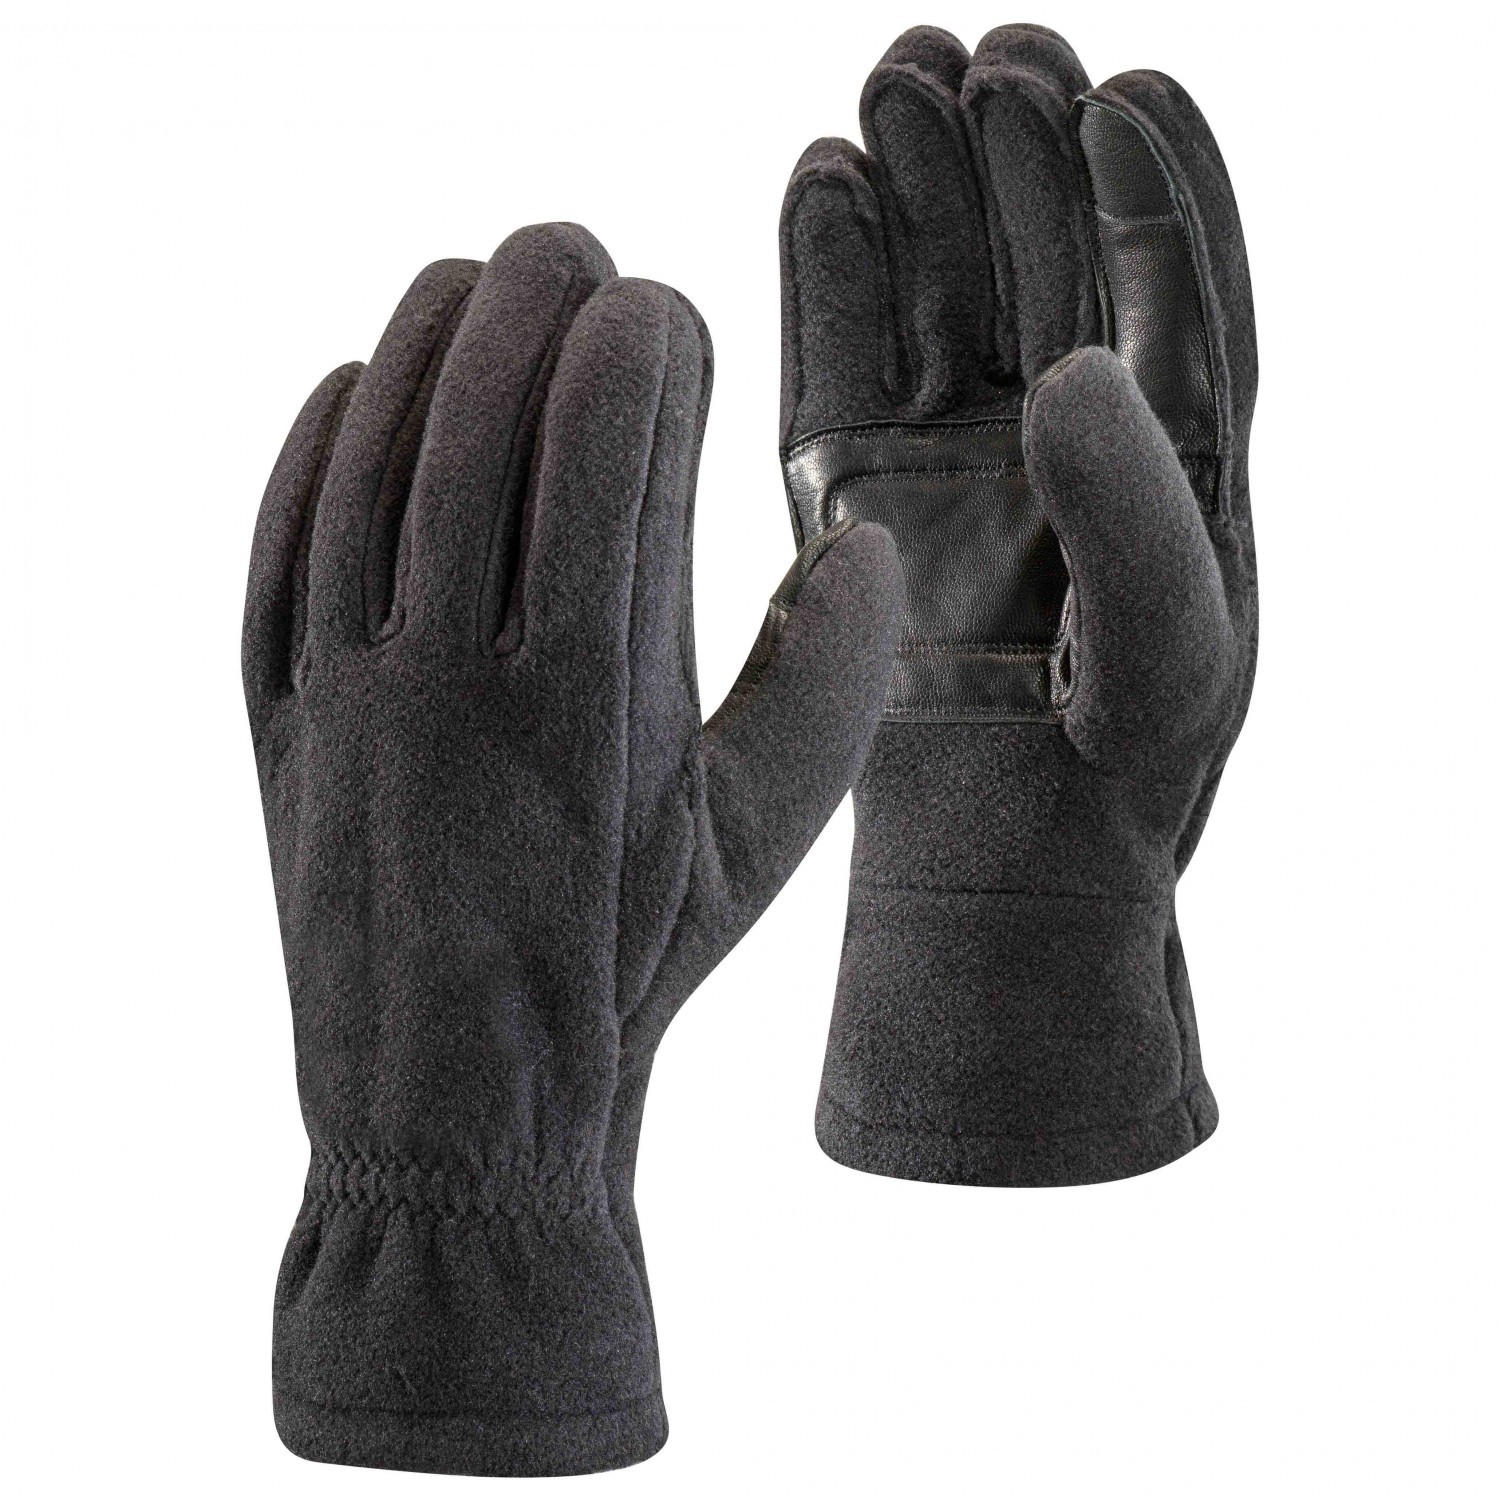 Black Diamond Mid Weight Fleece Gloves : Black